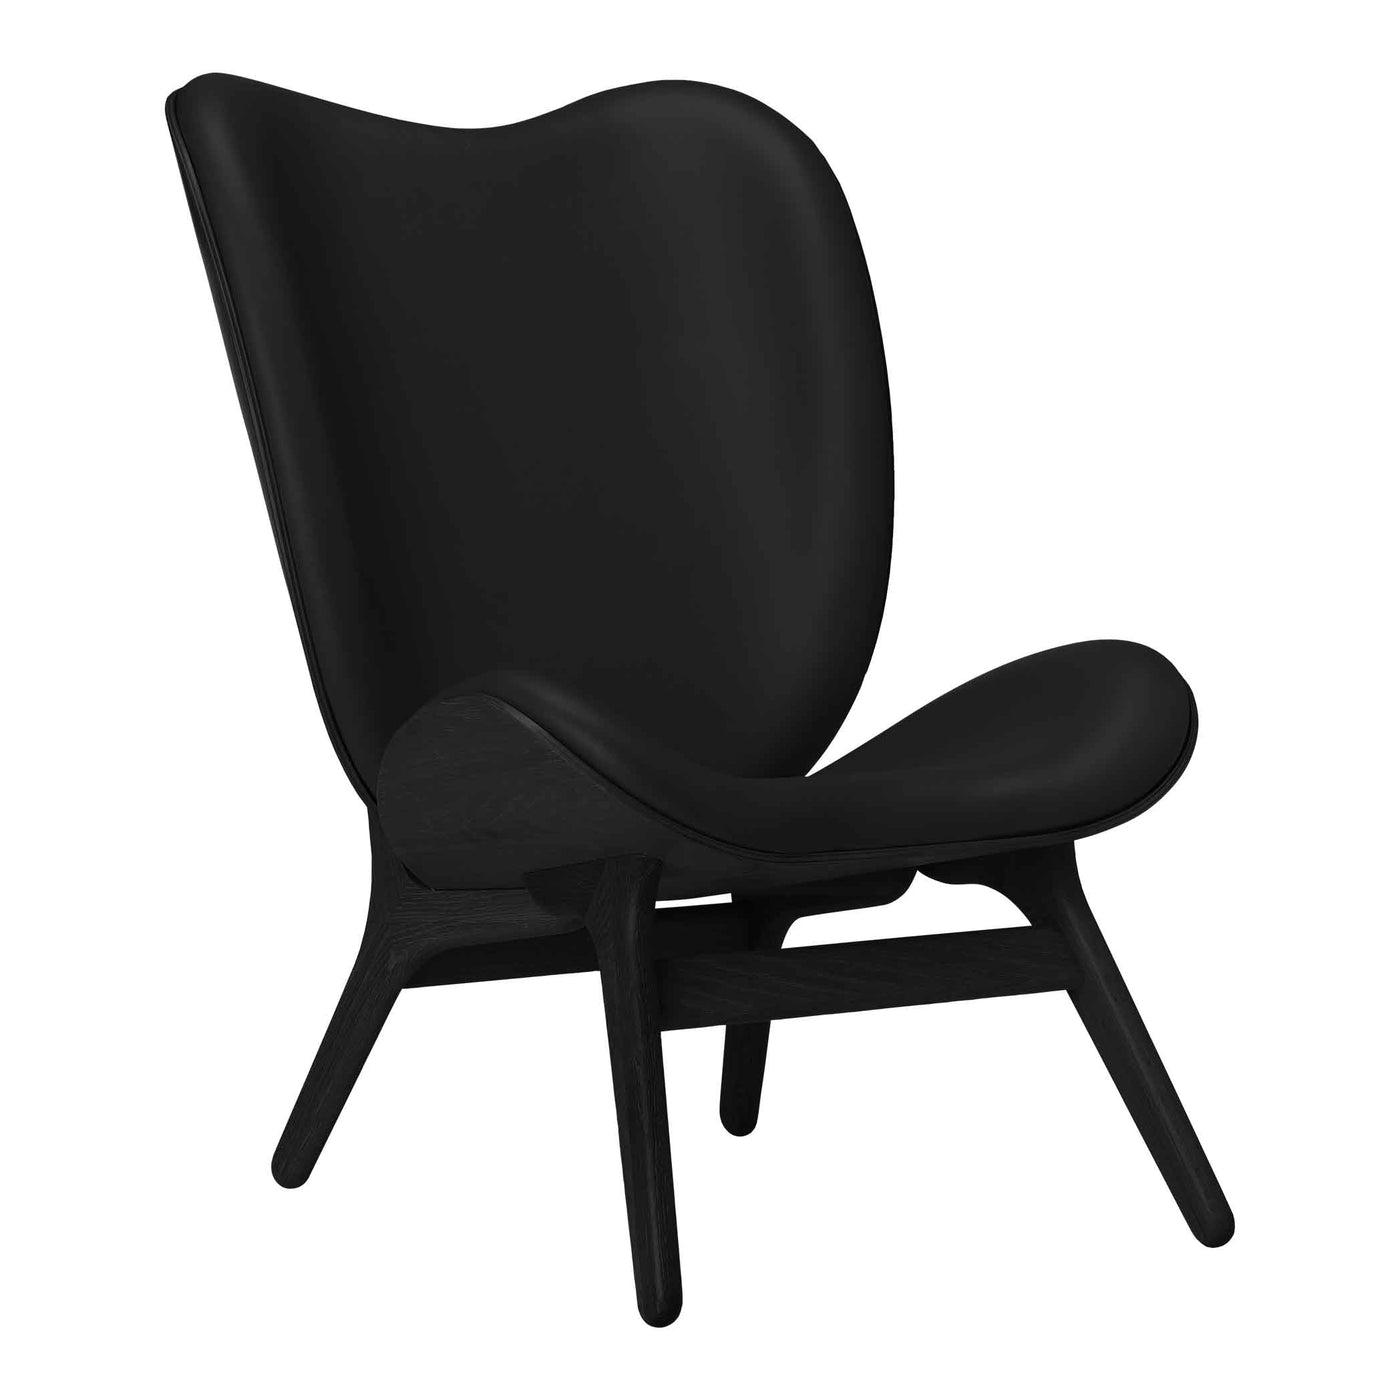 Umage A Conversation Piece Tall, fauteuil confortable avec dossier haut, en bois et tissu, chêne noir, cuir noir